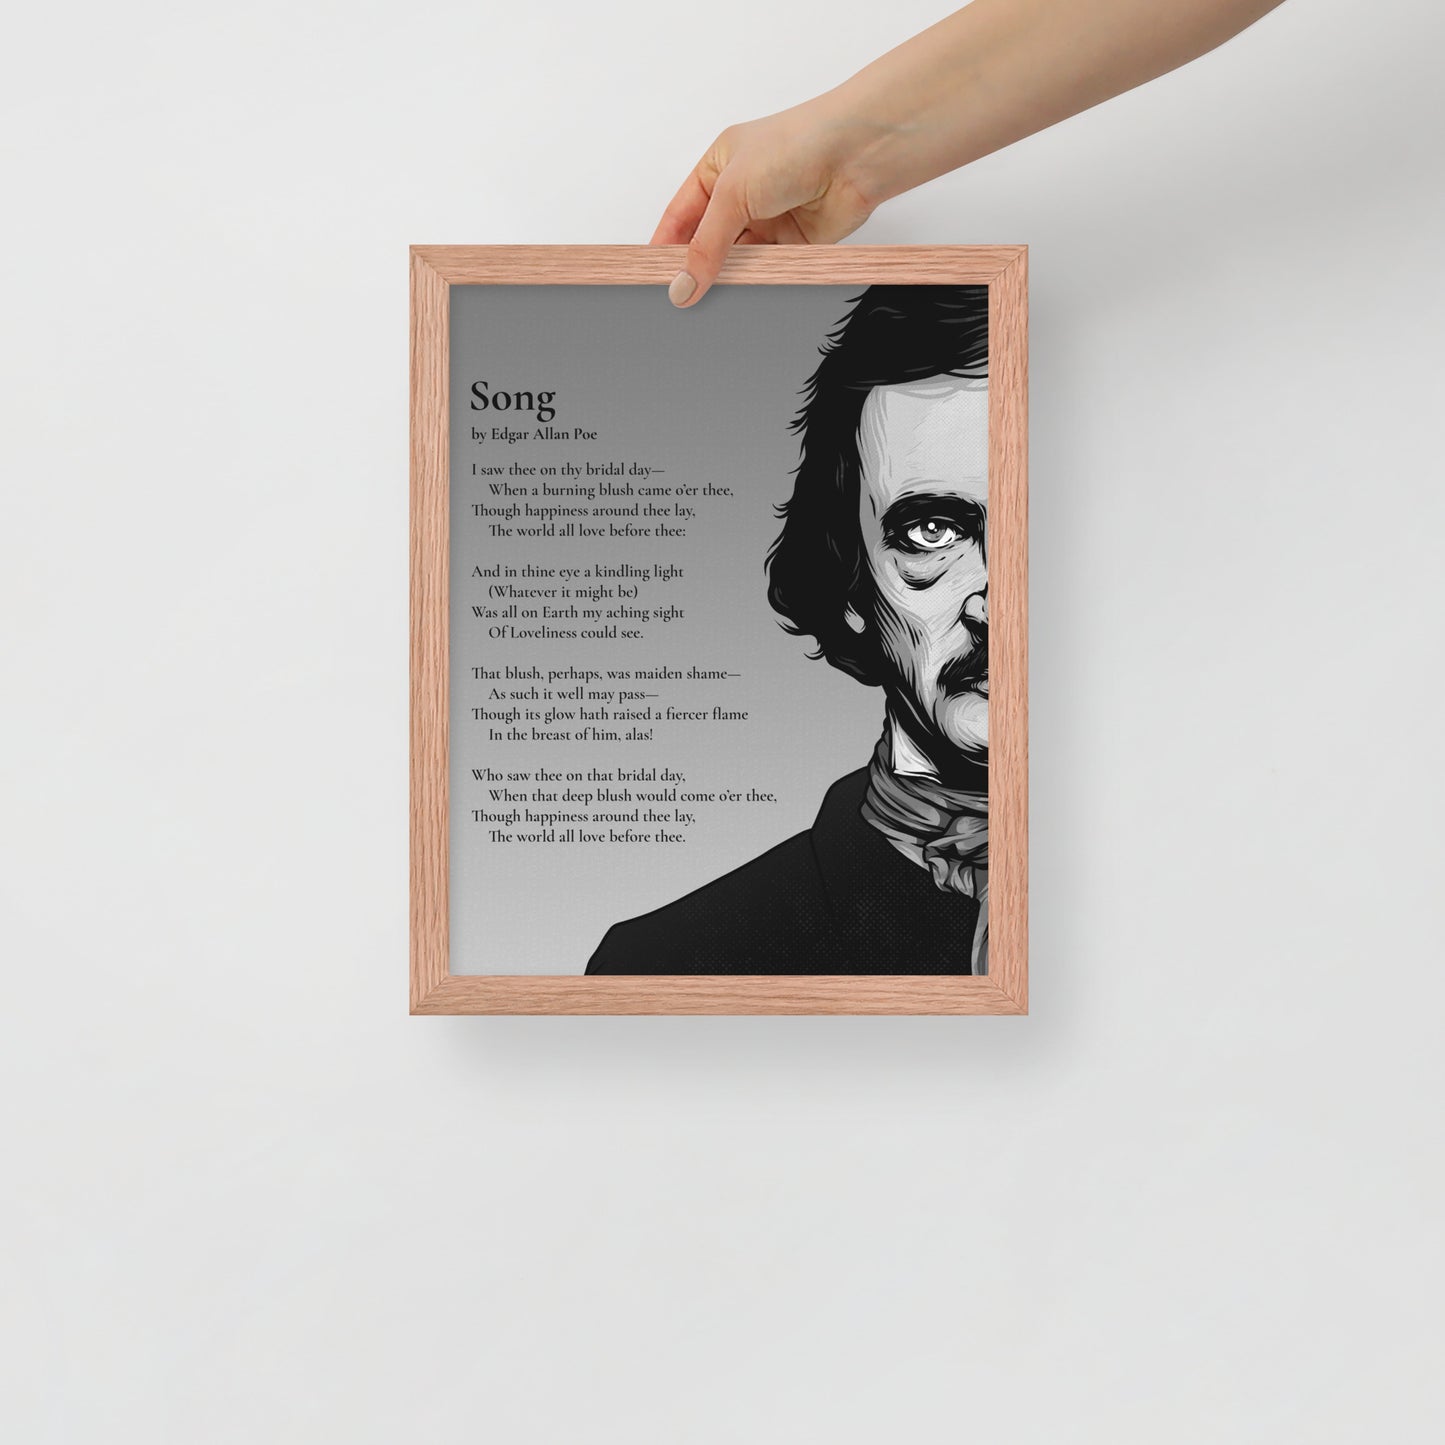 Edgar Allan Poe's 'Song' Framed Matted Poster - 11 x 14 Red Oak Frame